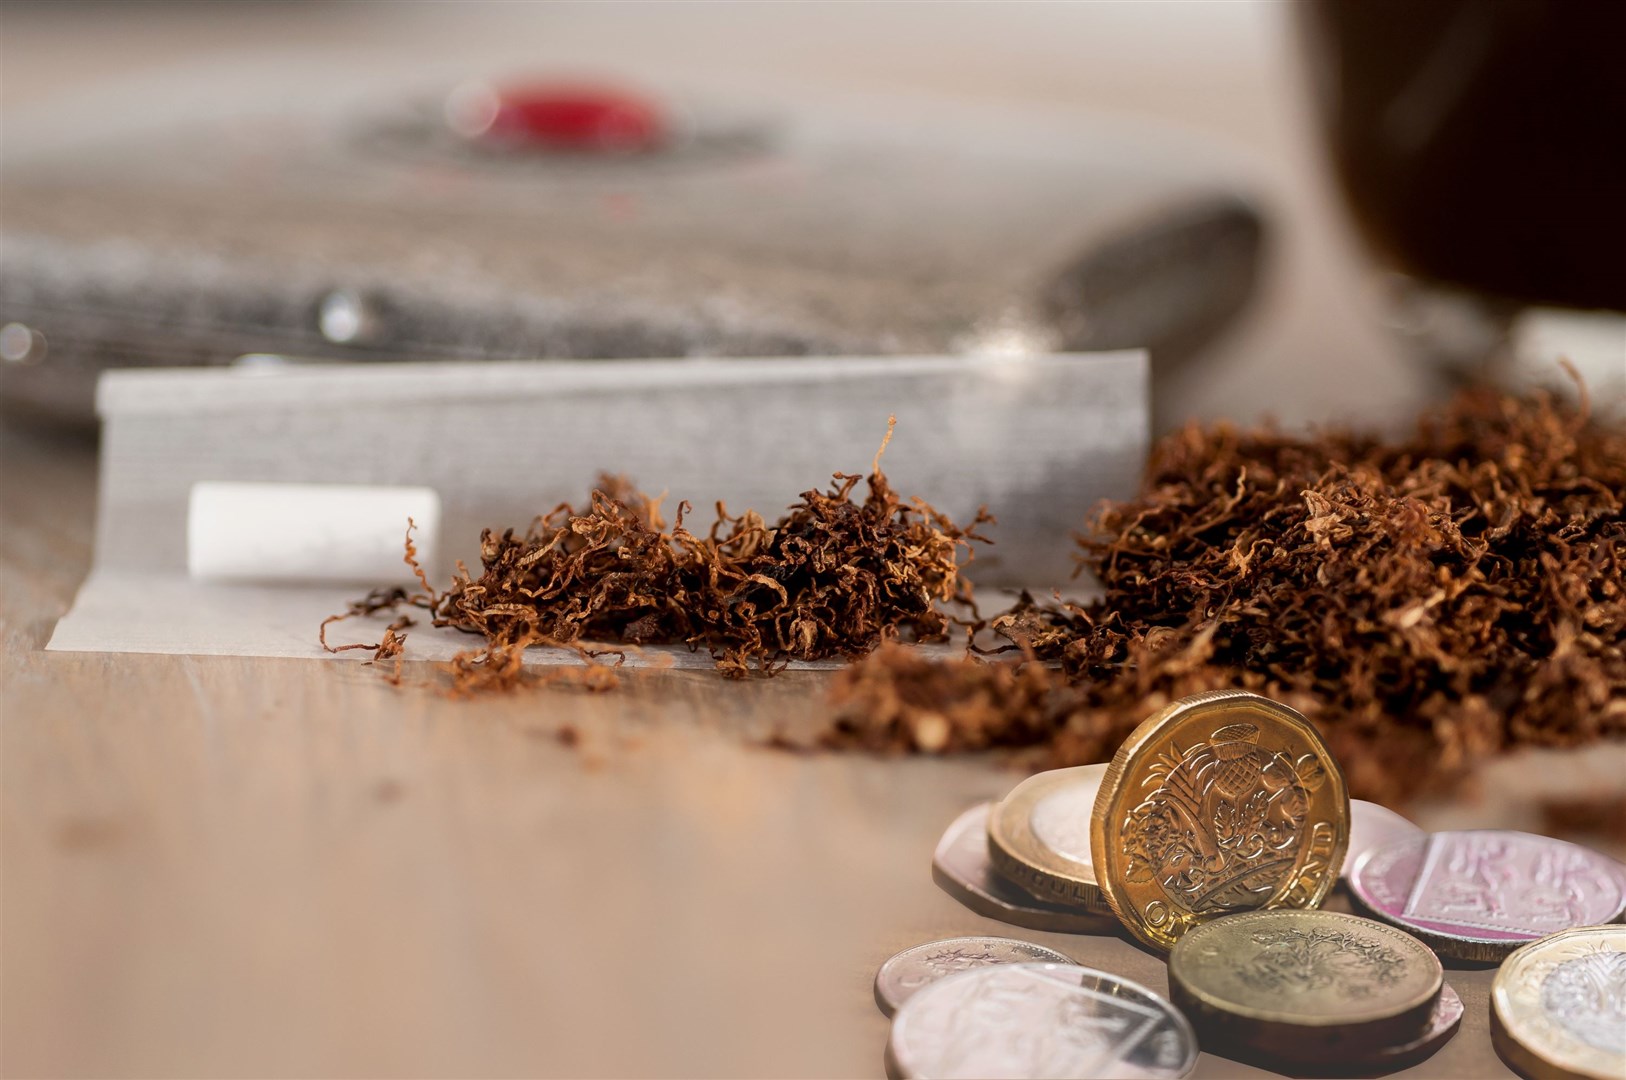 Around £2000 of illegal tobacco was seized.